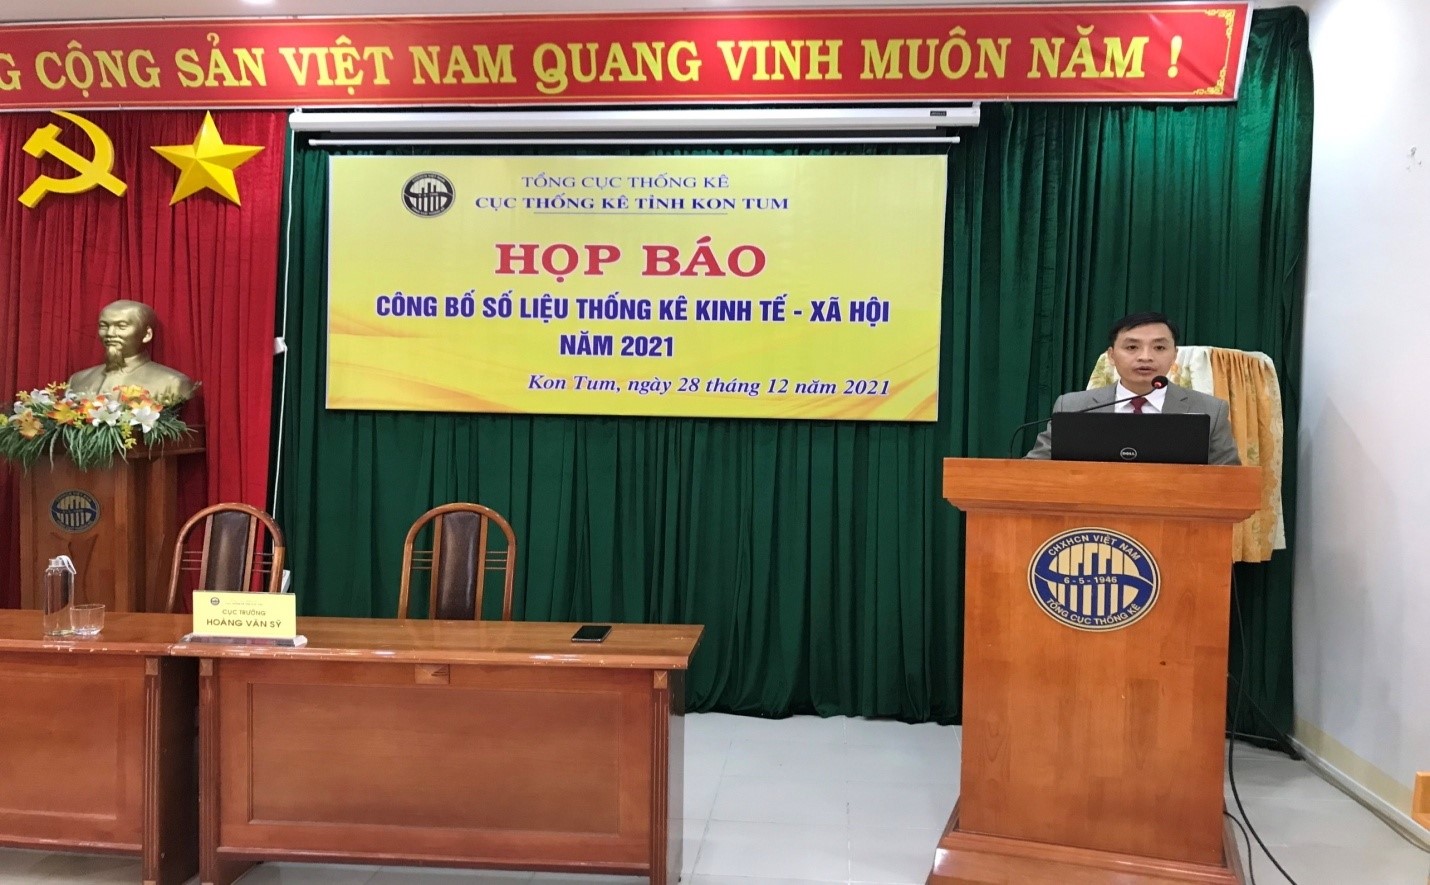 Cục Thống kê tỉnh Kon Tum tổ chức họp báo công bố số liệu thống kê kinh tế - xã hội năm 2021